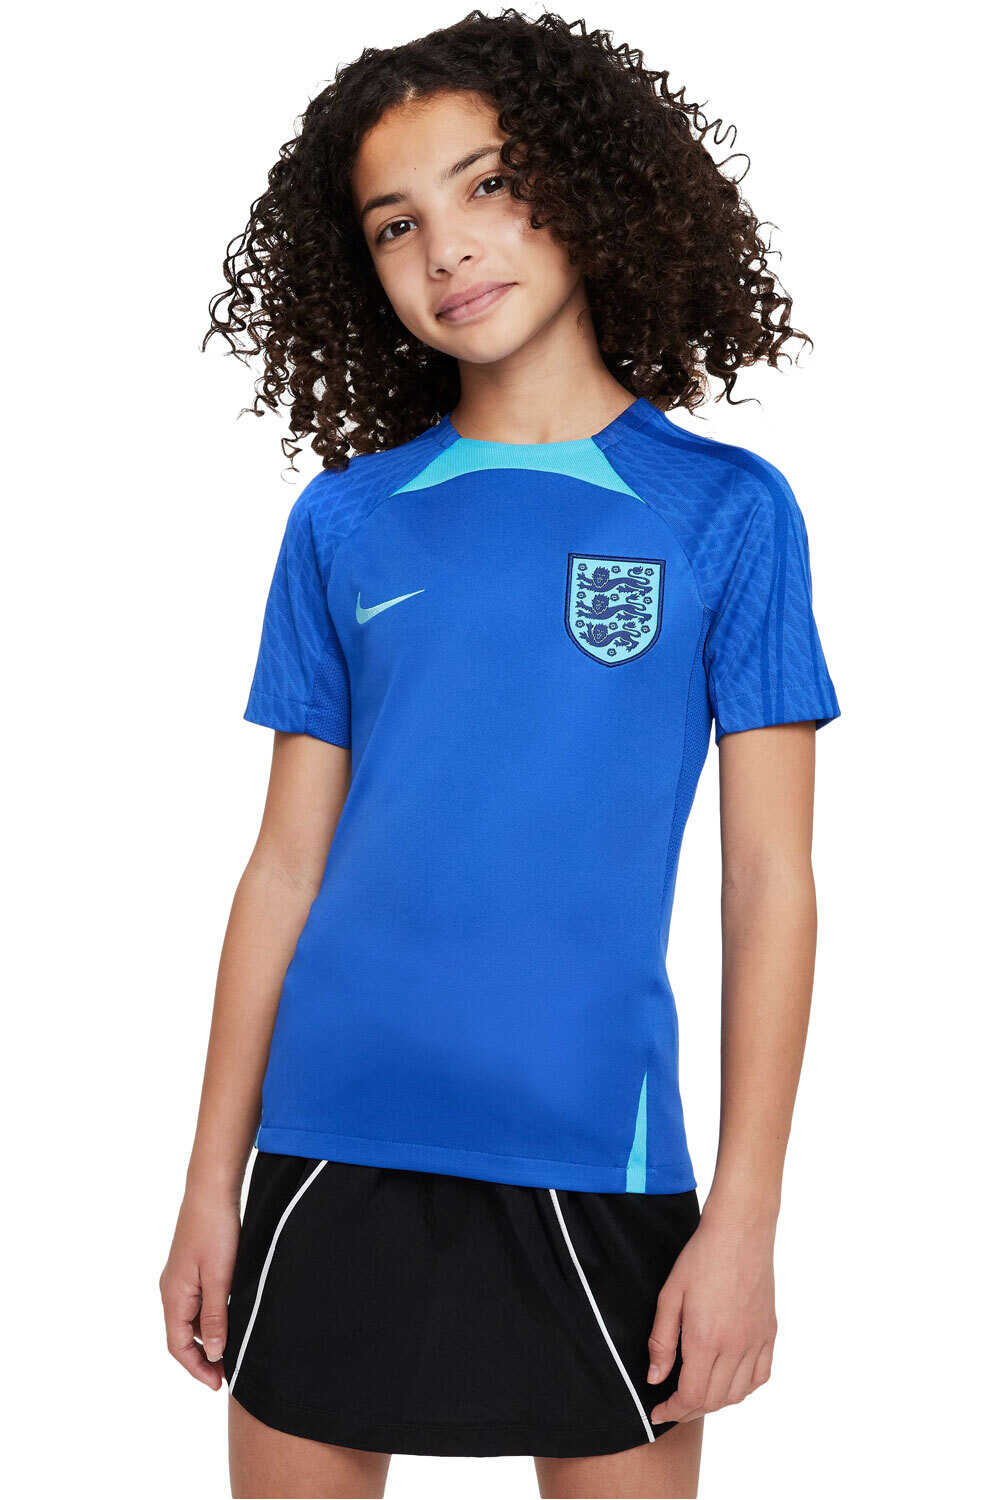 Nike camiseta entrenamiento niño ENGLAND 22 STRIKE TOP vista frontal